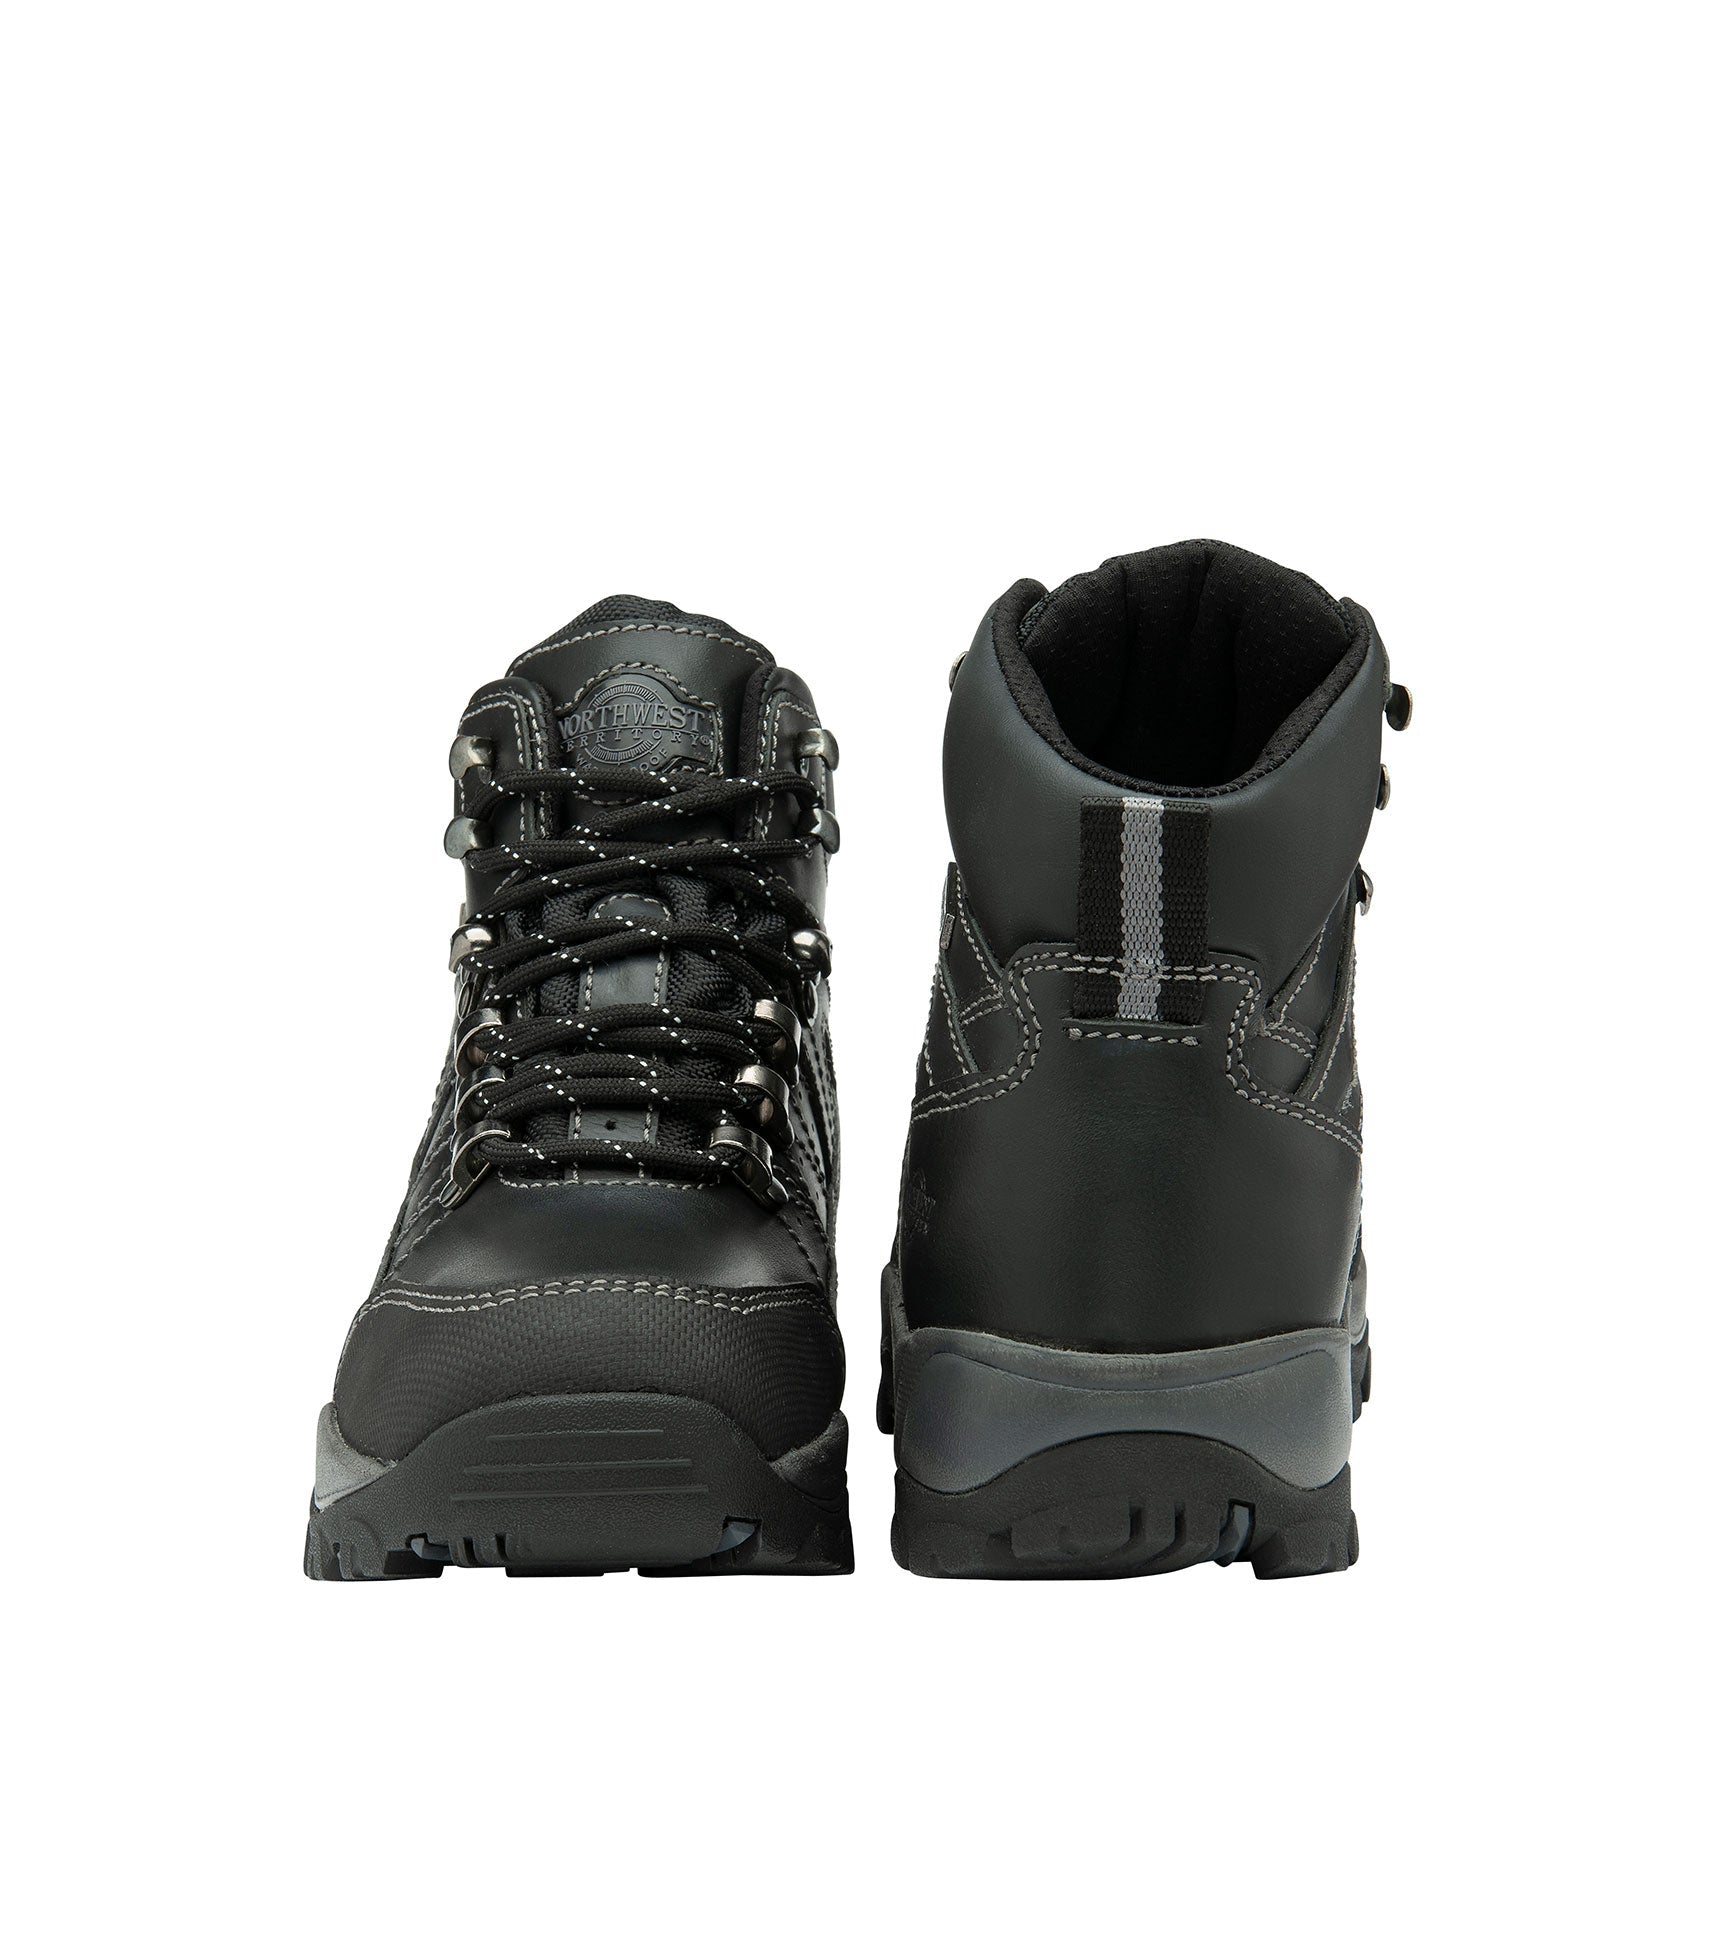 Women's Leather Waterproof Walking Boots - Women's Leather Waterproof Walking Boots